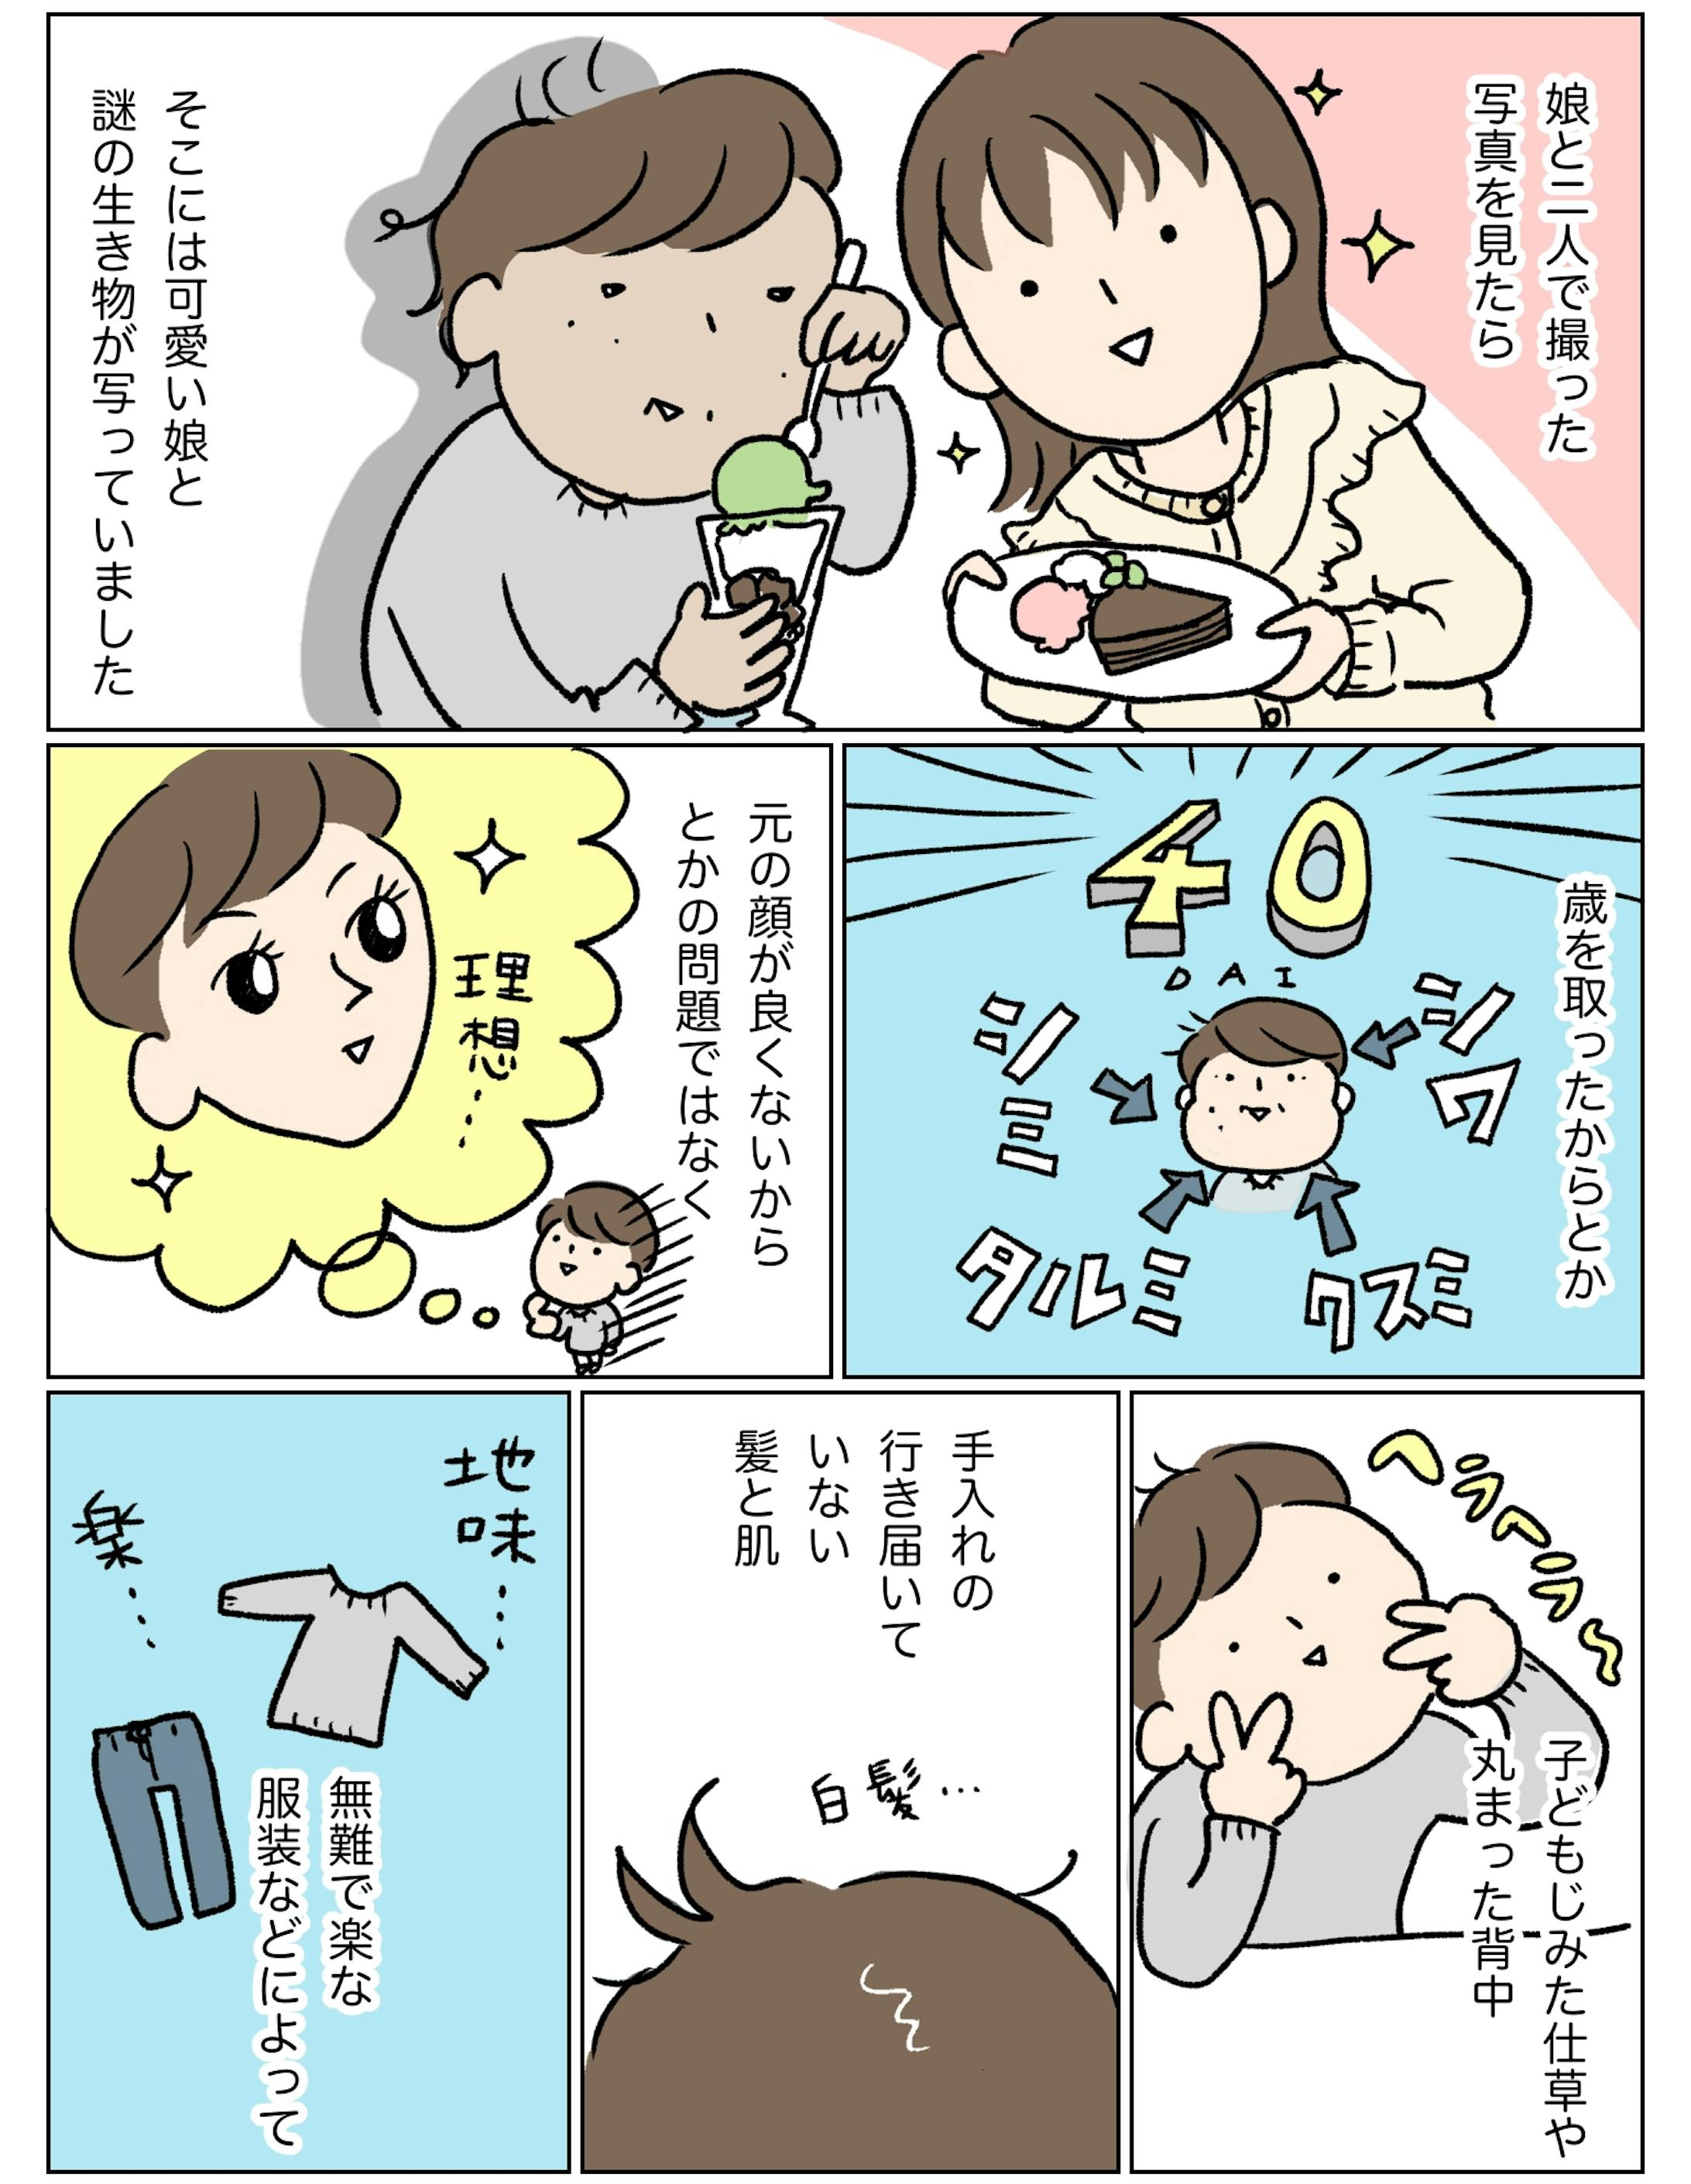 【kodomoe web】美容漫画連載 「40代ママのキレイをアップデート」-1